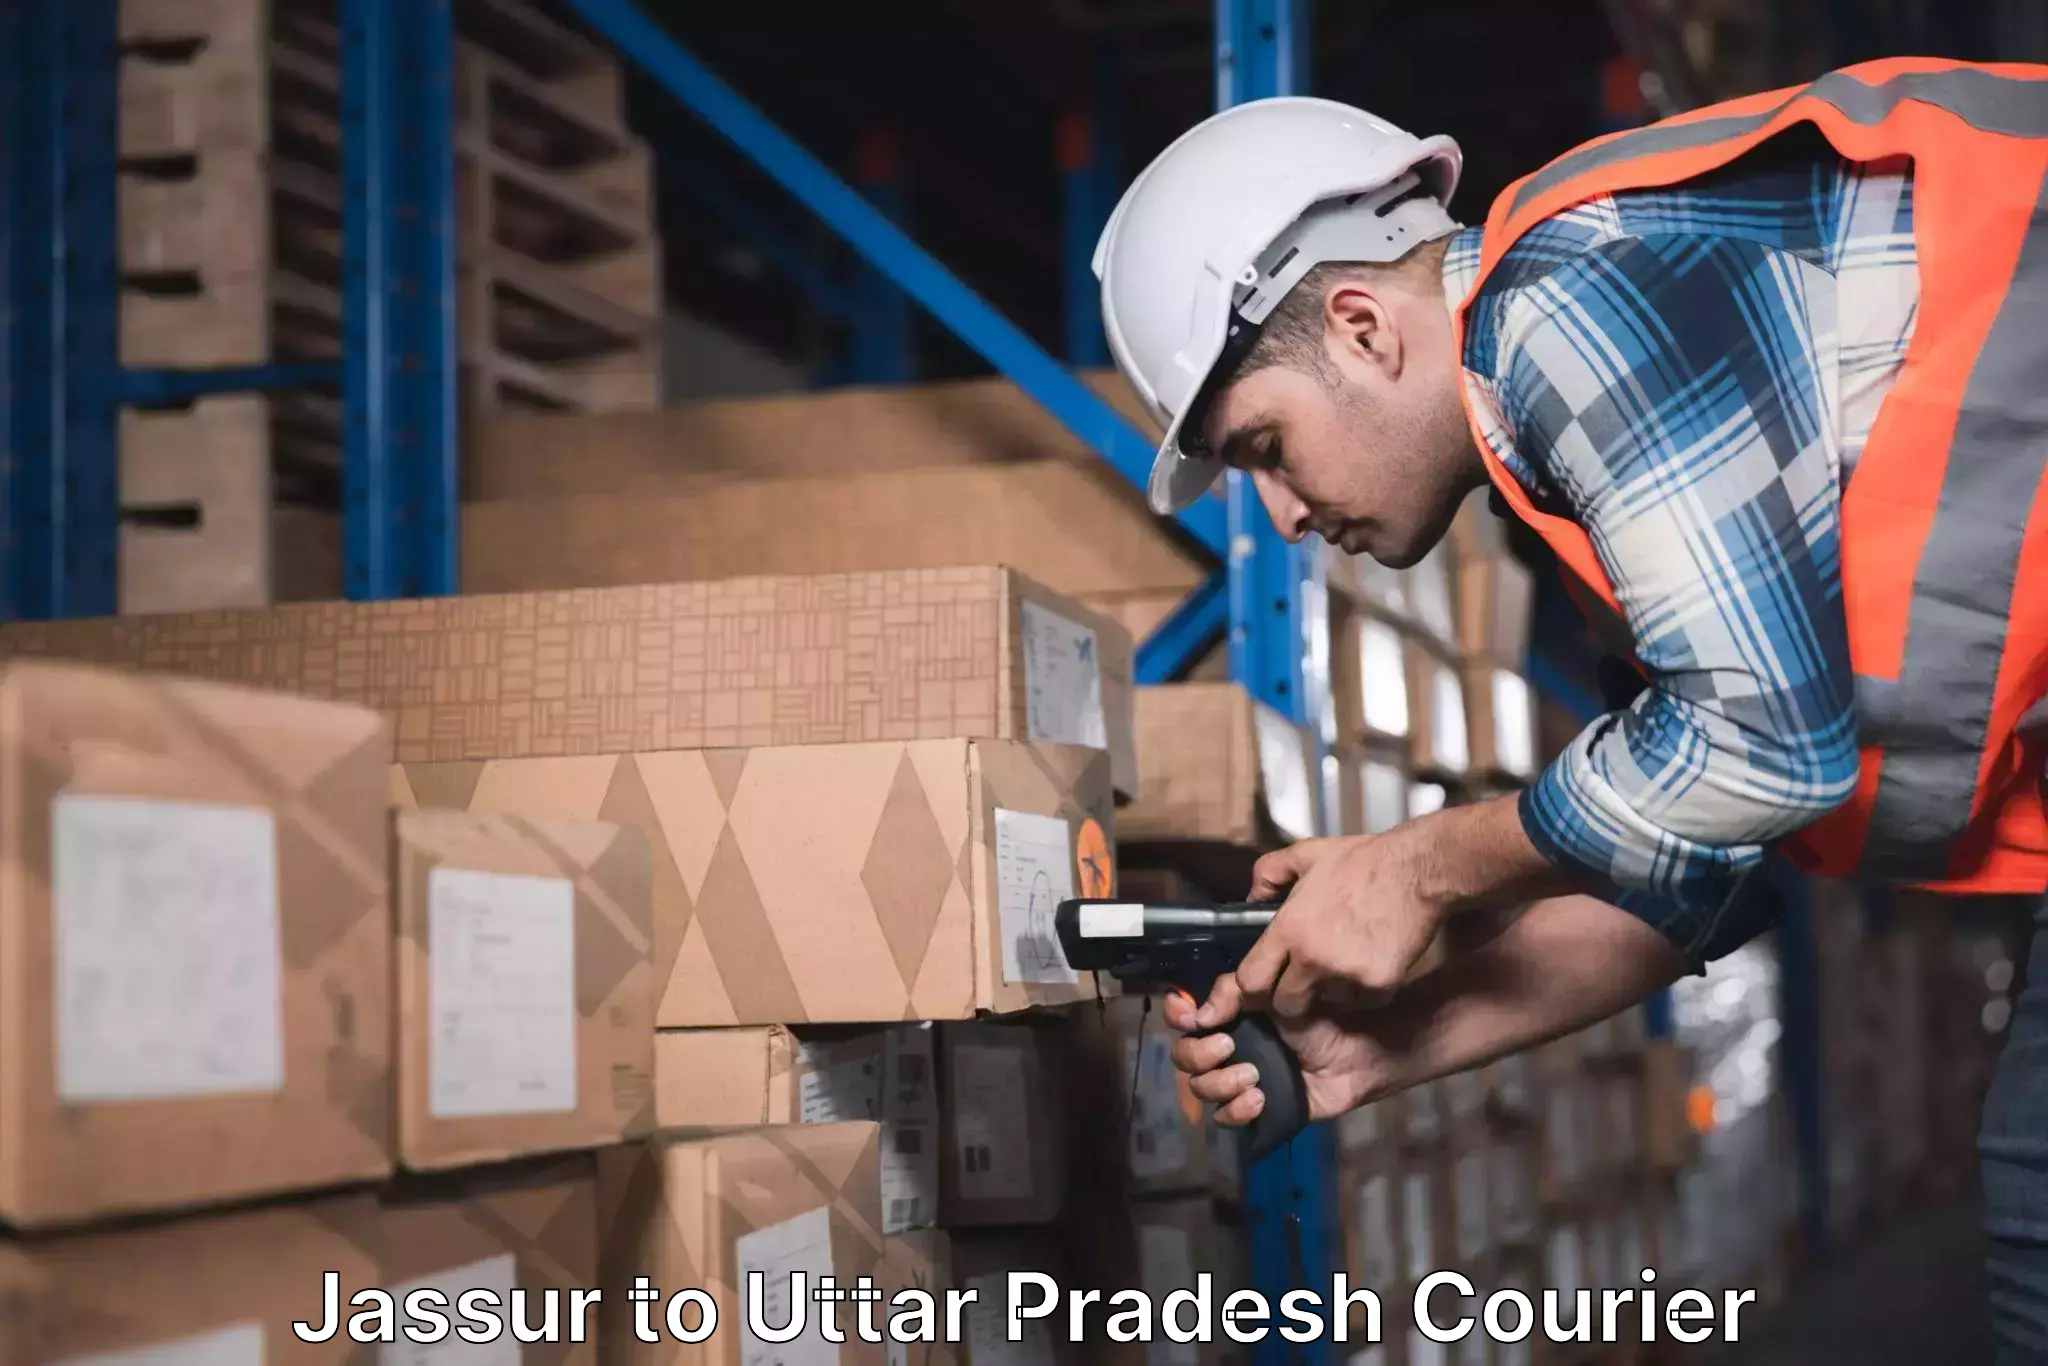 Professional courier handling in Jassur to Uttar Pradesh